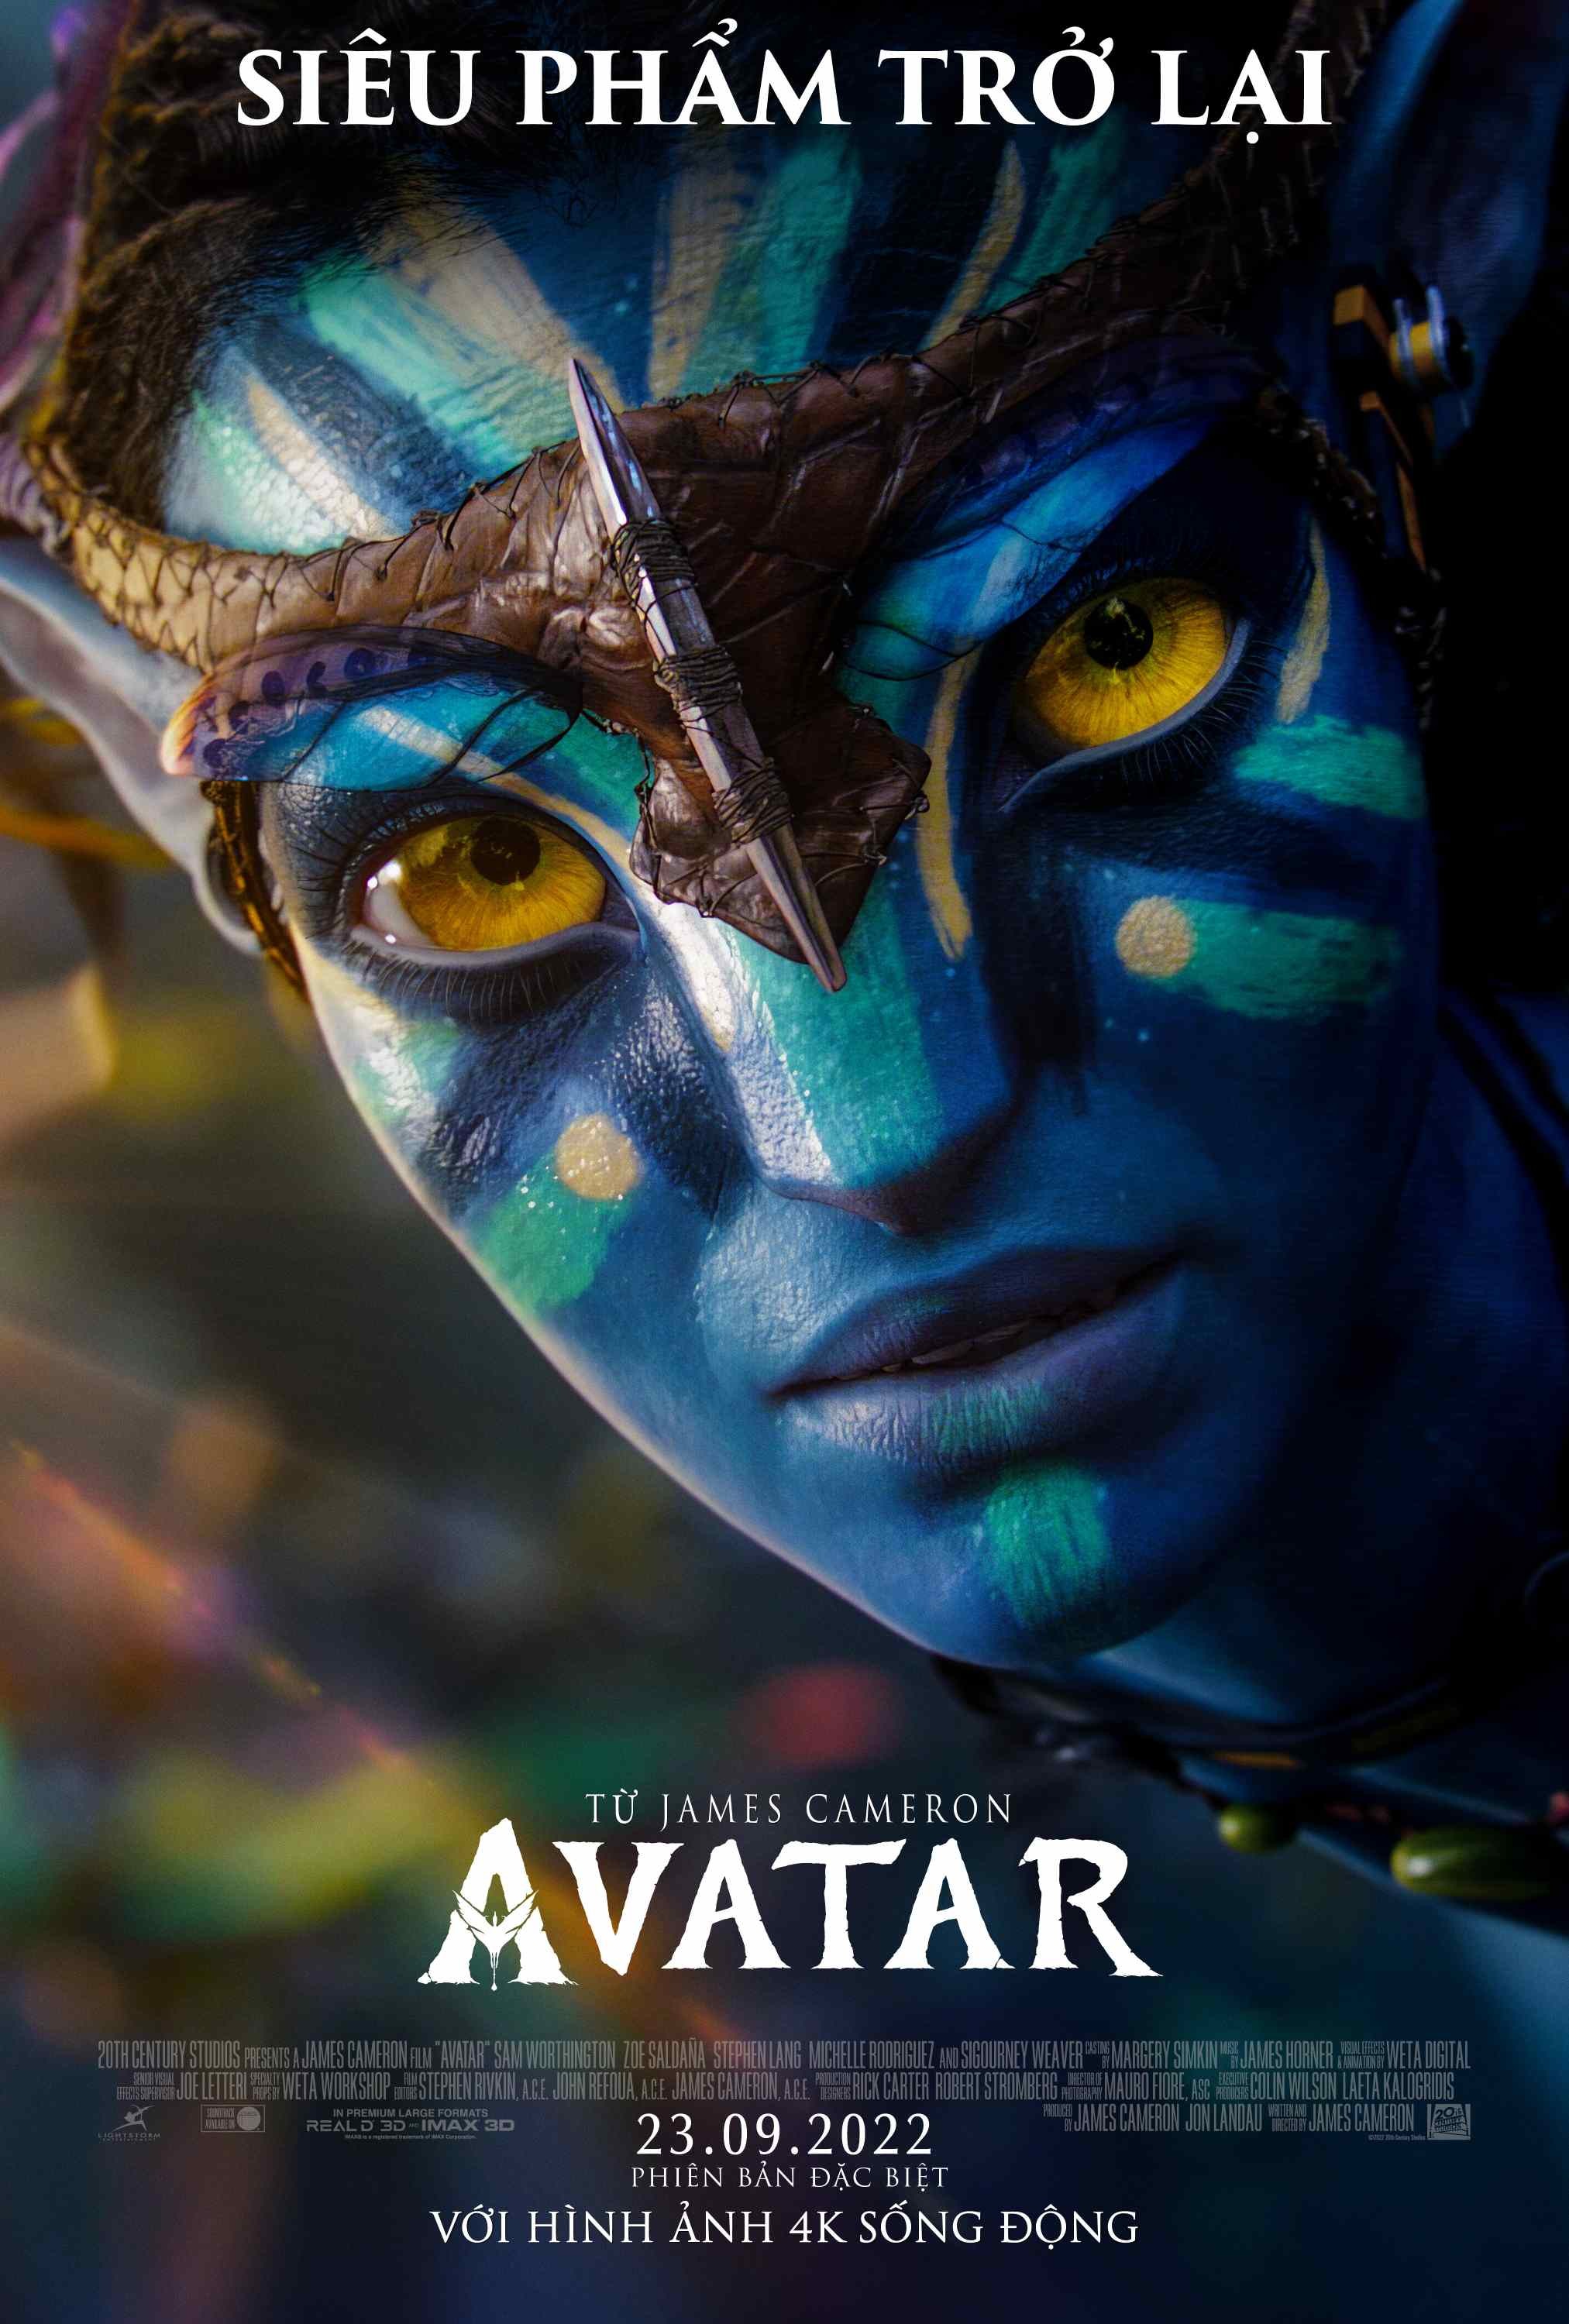 Phim Avatar 1 Chiếu Rạp: Trải Nghiệm Đỉnh Cao Công Nghệ Điện Ảnh